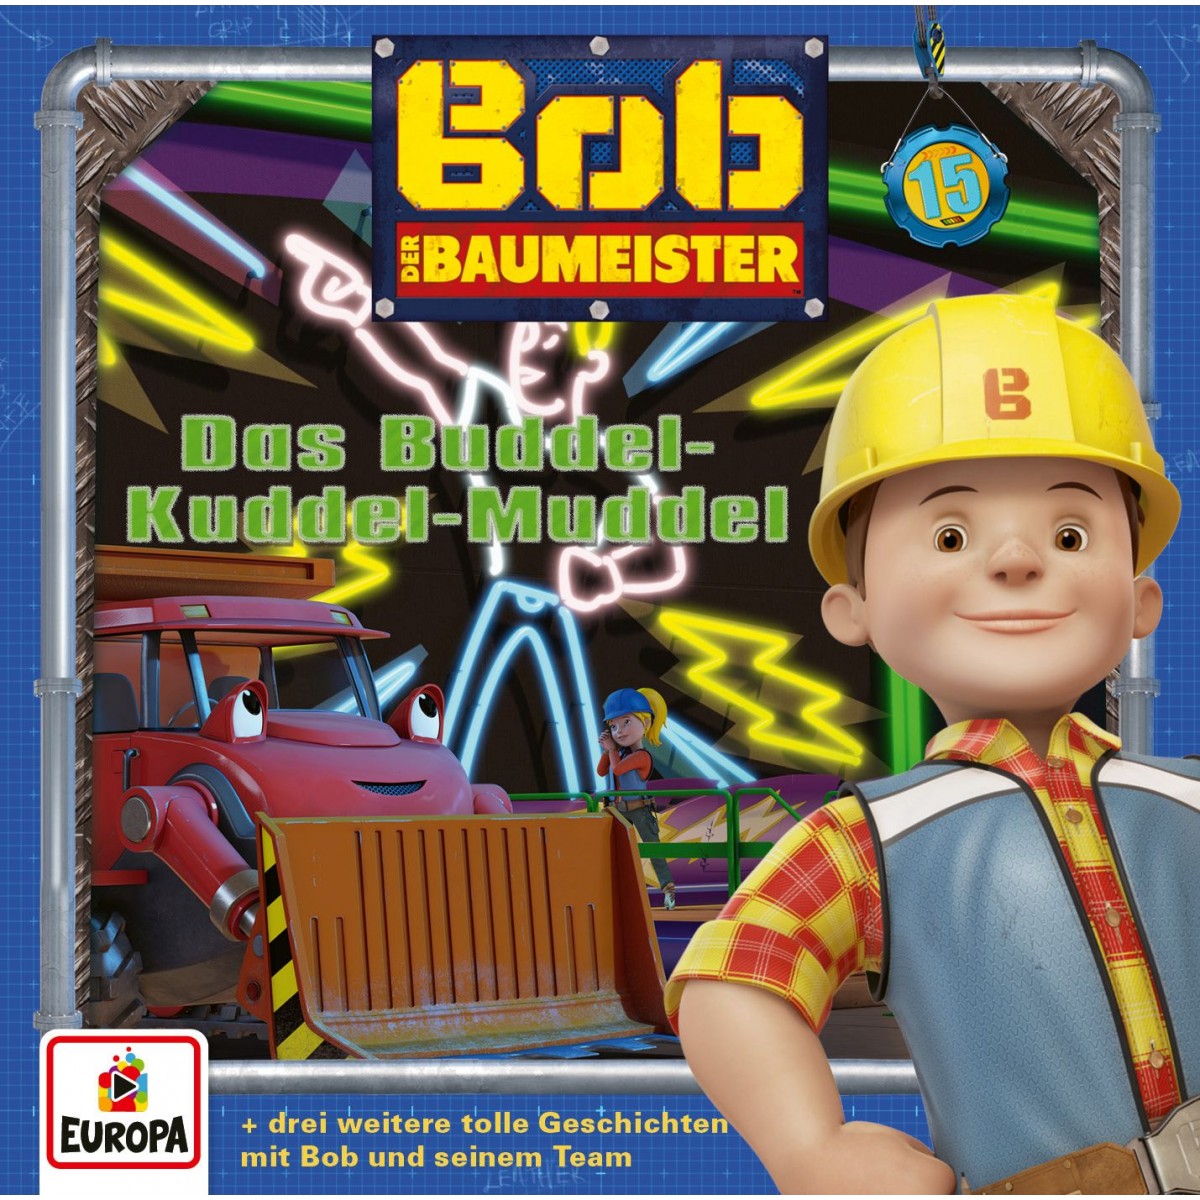 Europa - Bob der Baumeister - Glückwünsche aus dem All, Folge 25